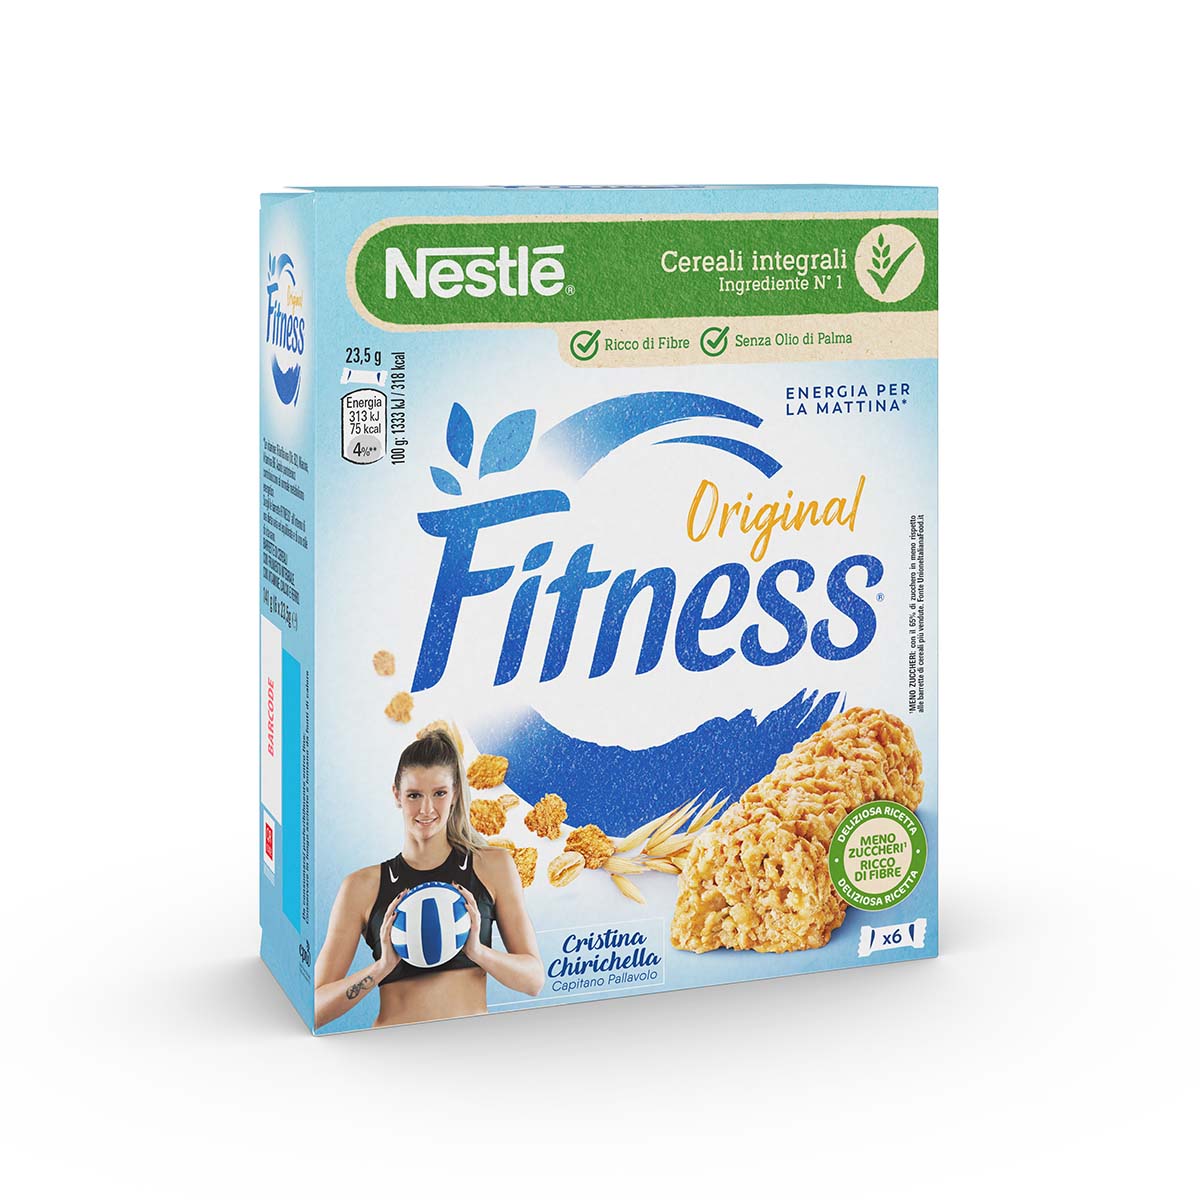 Fitness® ORIGINAL Barrette di cereali con frumento integrale, con vitamine, calcio e ferro x6